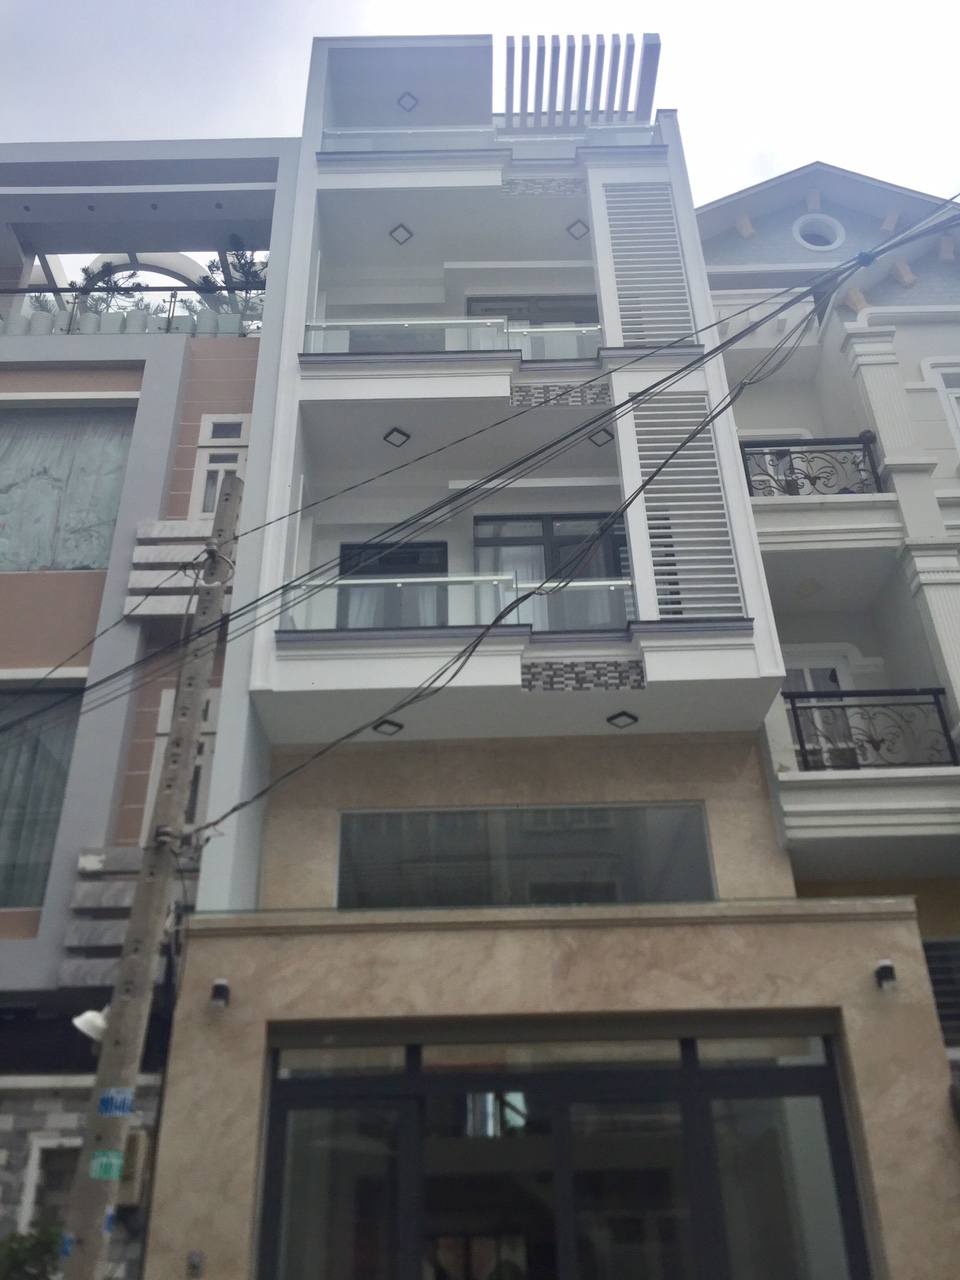 Bán nhà mới đẹp mặt tiền đường 16m Phú Thuận, Quận 7, DT 5x20m, 2 lầu. Giá 9,7 tỷ